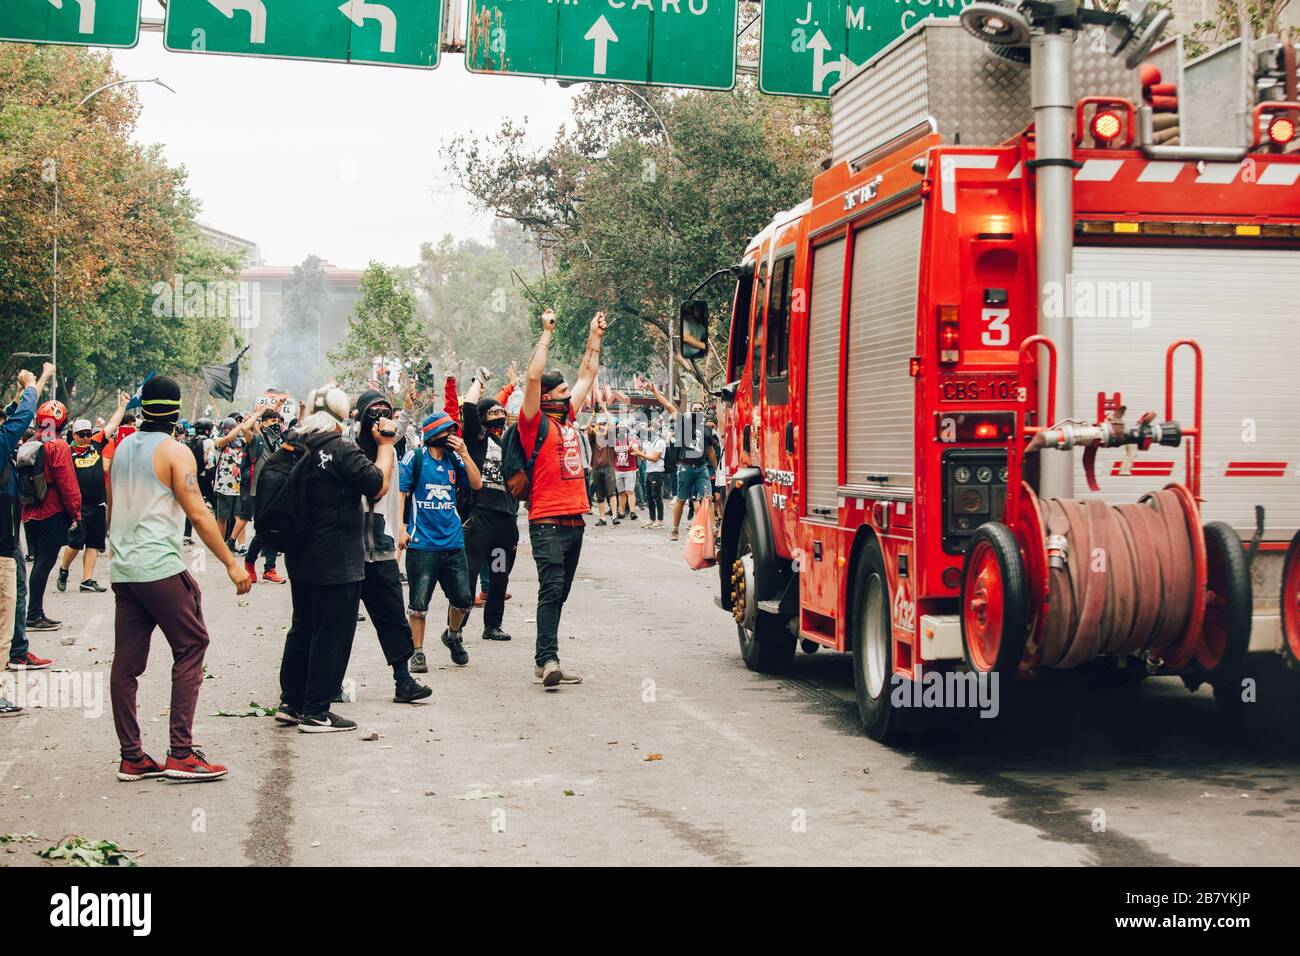 SANTIAGO, CHILE - 8. NOVEMBER 2019 - Demonstranten ziehen Barrikaden, um während der Proteste gegen die Regierung Pinera für die n eine Autofeuerpumpe zu passieren Stockfoto